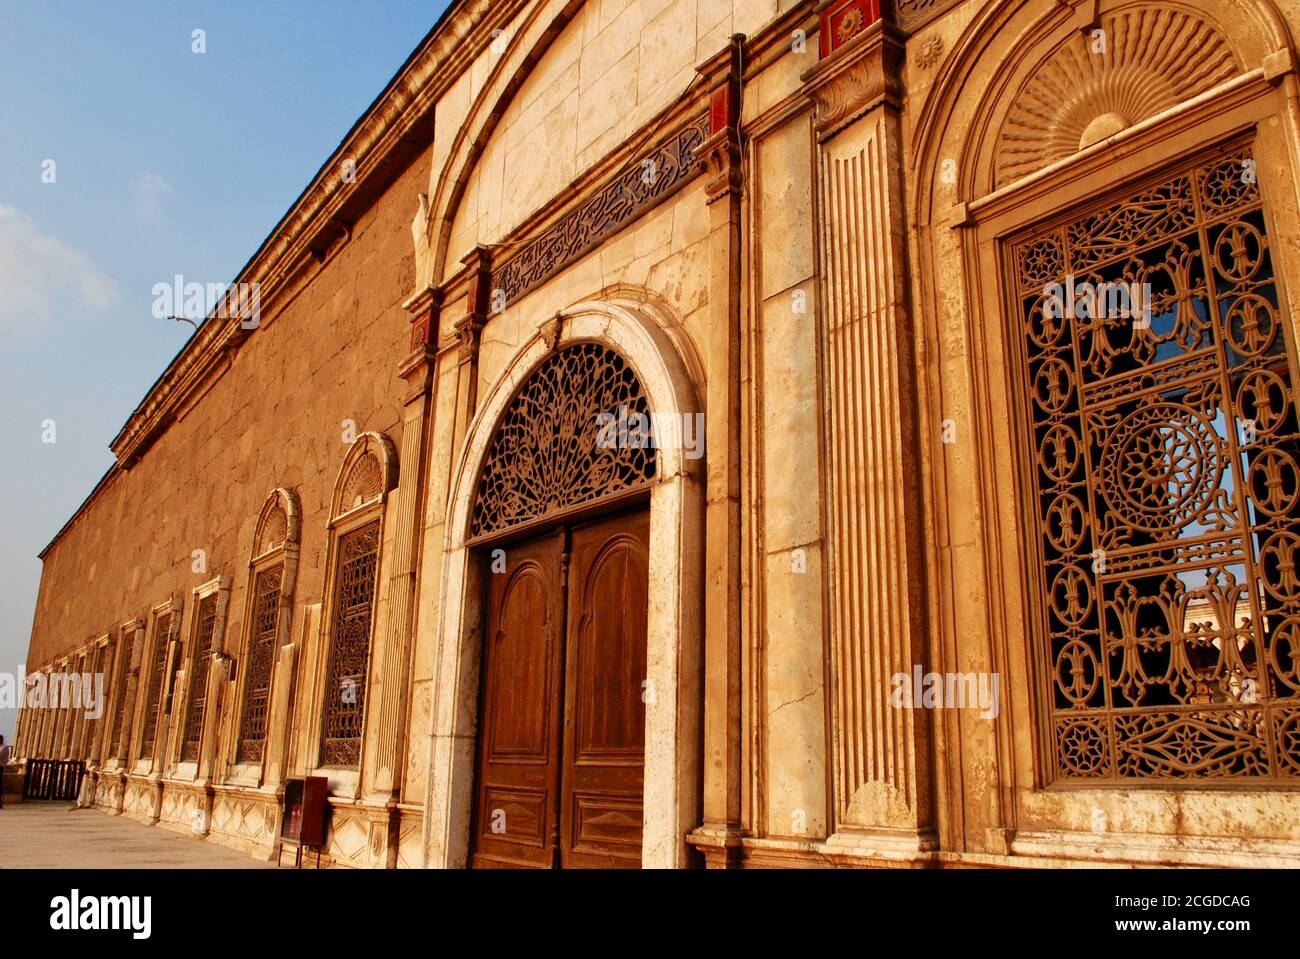 Il Cairo. La Grande Moschea di Muhammad Ali Pasha o la Moschea dell'Alabastro risale al 19 ° secolo. Segno sopra porta leggere: 'Pace sia su di voi. Tuo Signore ha Foto Stock